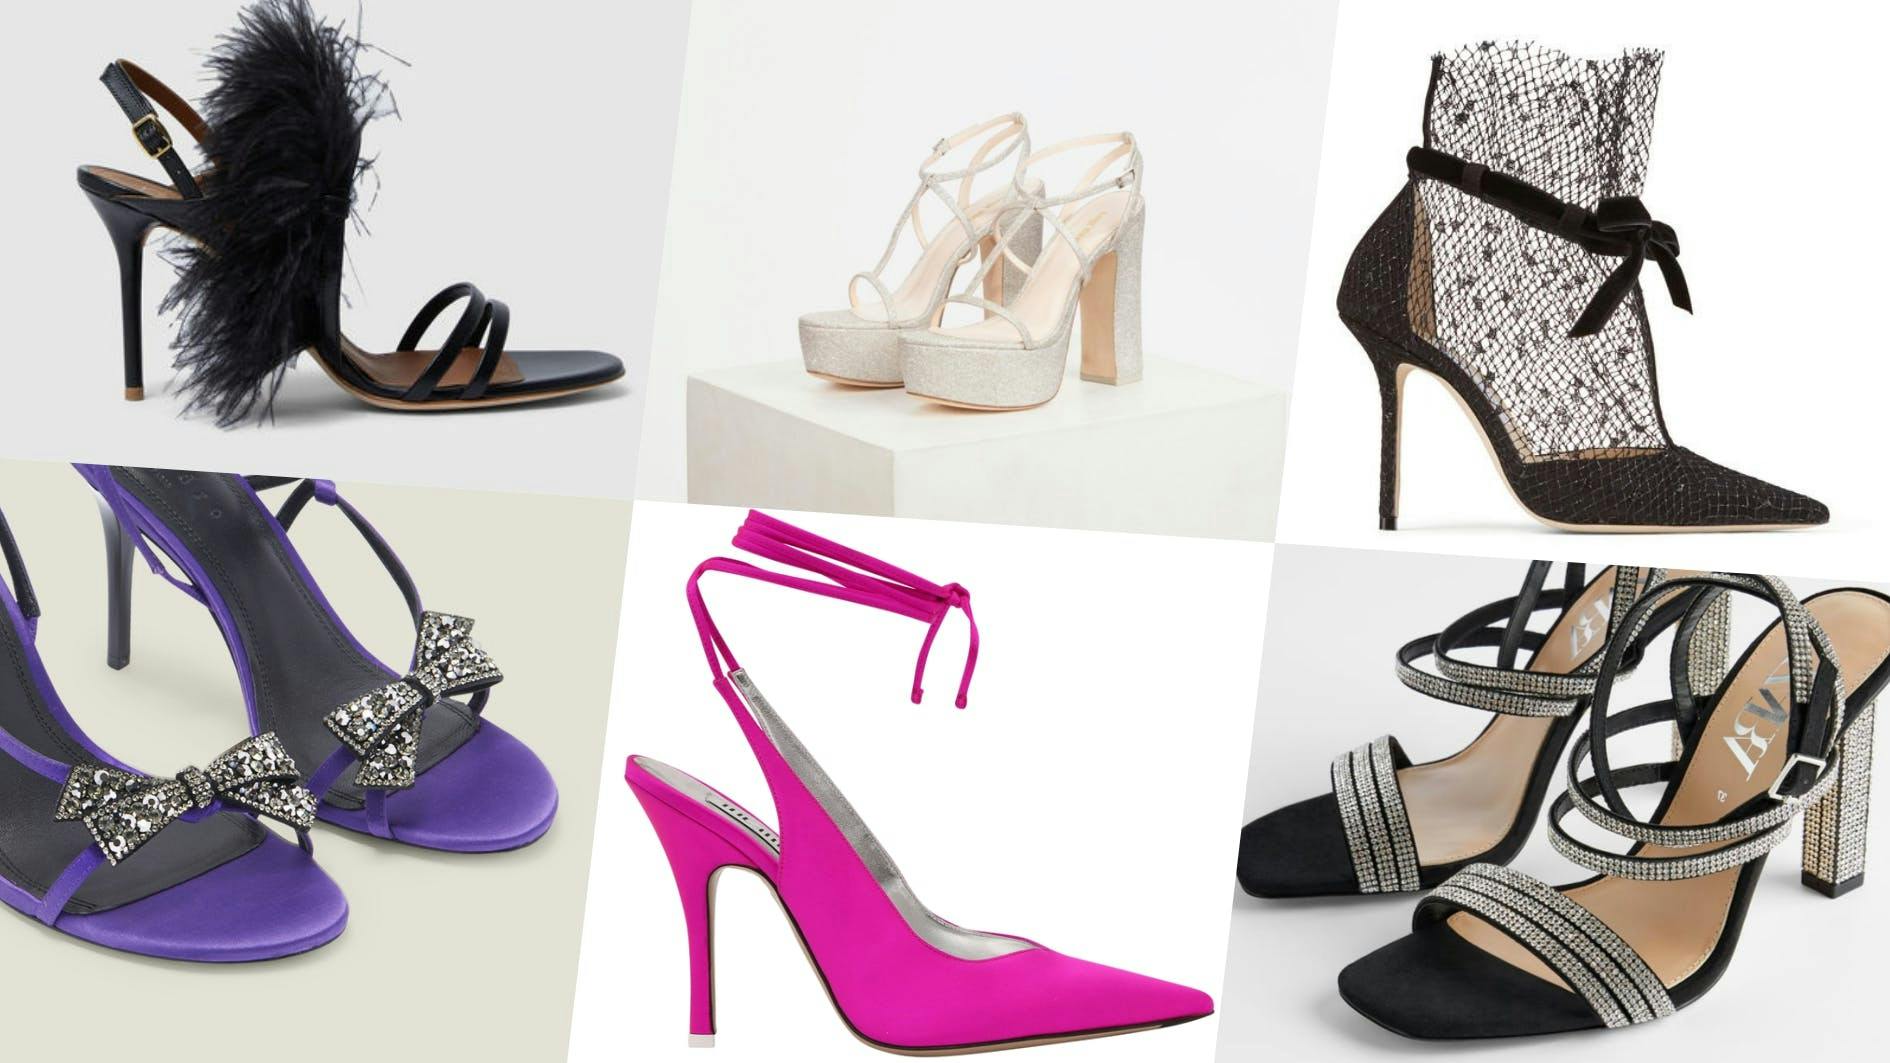 clothing apparel footwear shoe high heel sandal